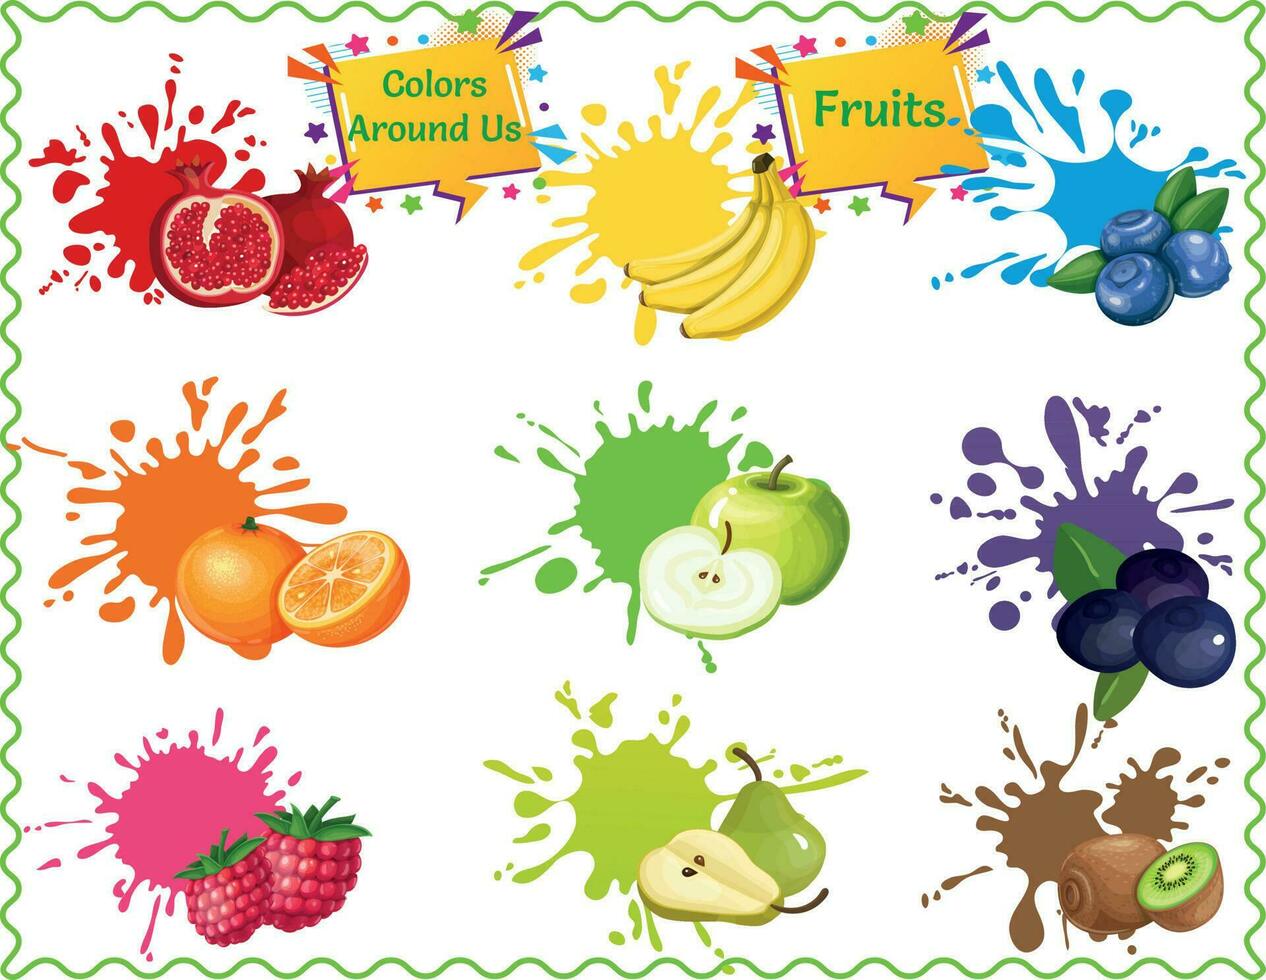 niños' frutas póster, comer en color, inspirado en el arcoiris nutrición póster, aprender frutas póster para niños, pared gráfico educativo niños vector